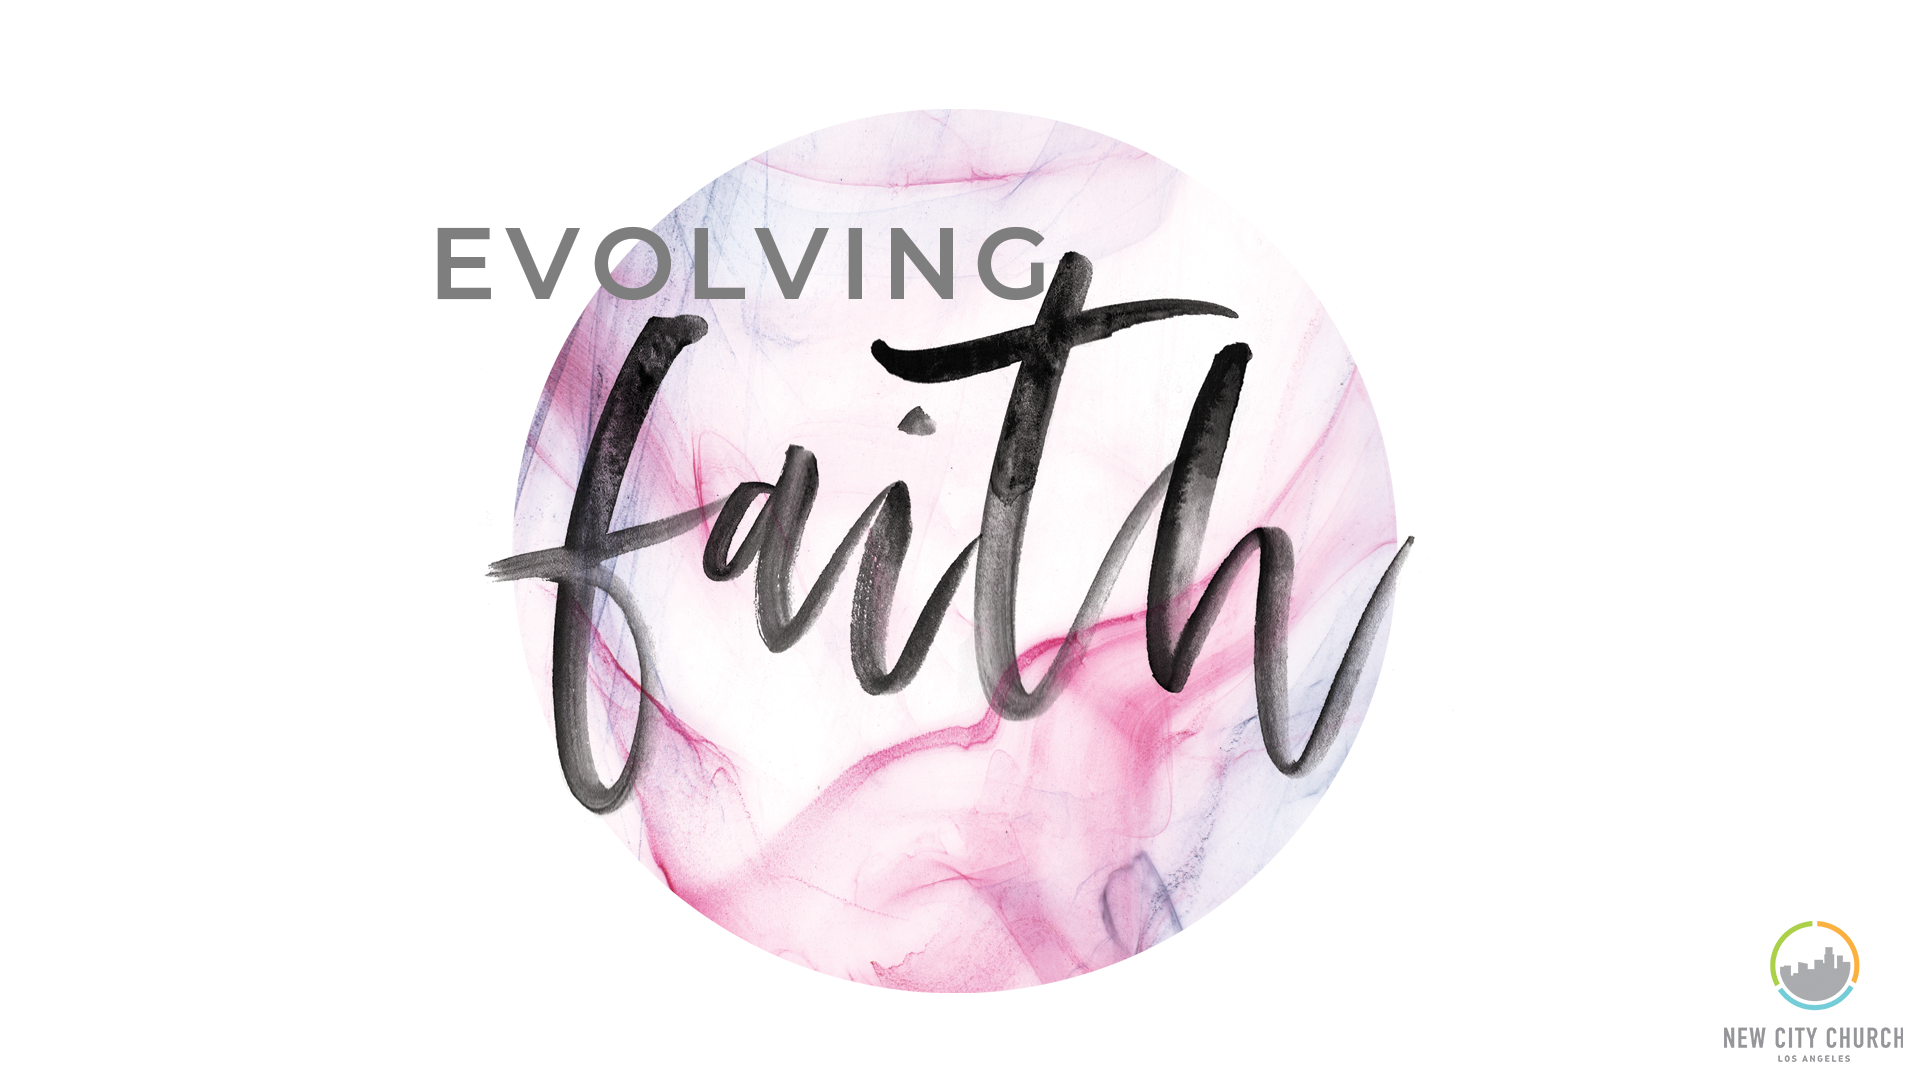 On Deconstructing Your Faith